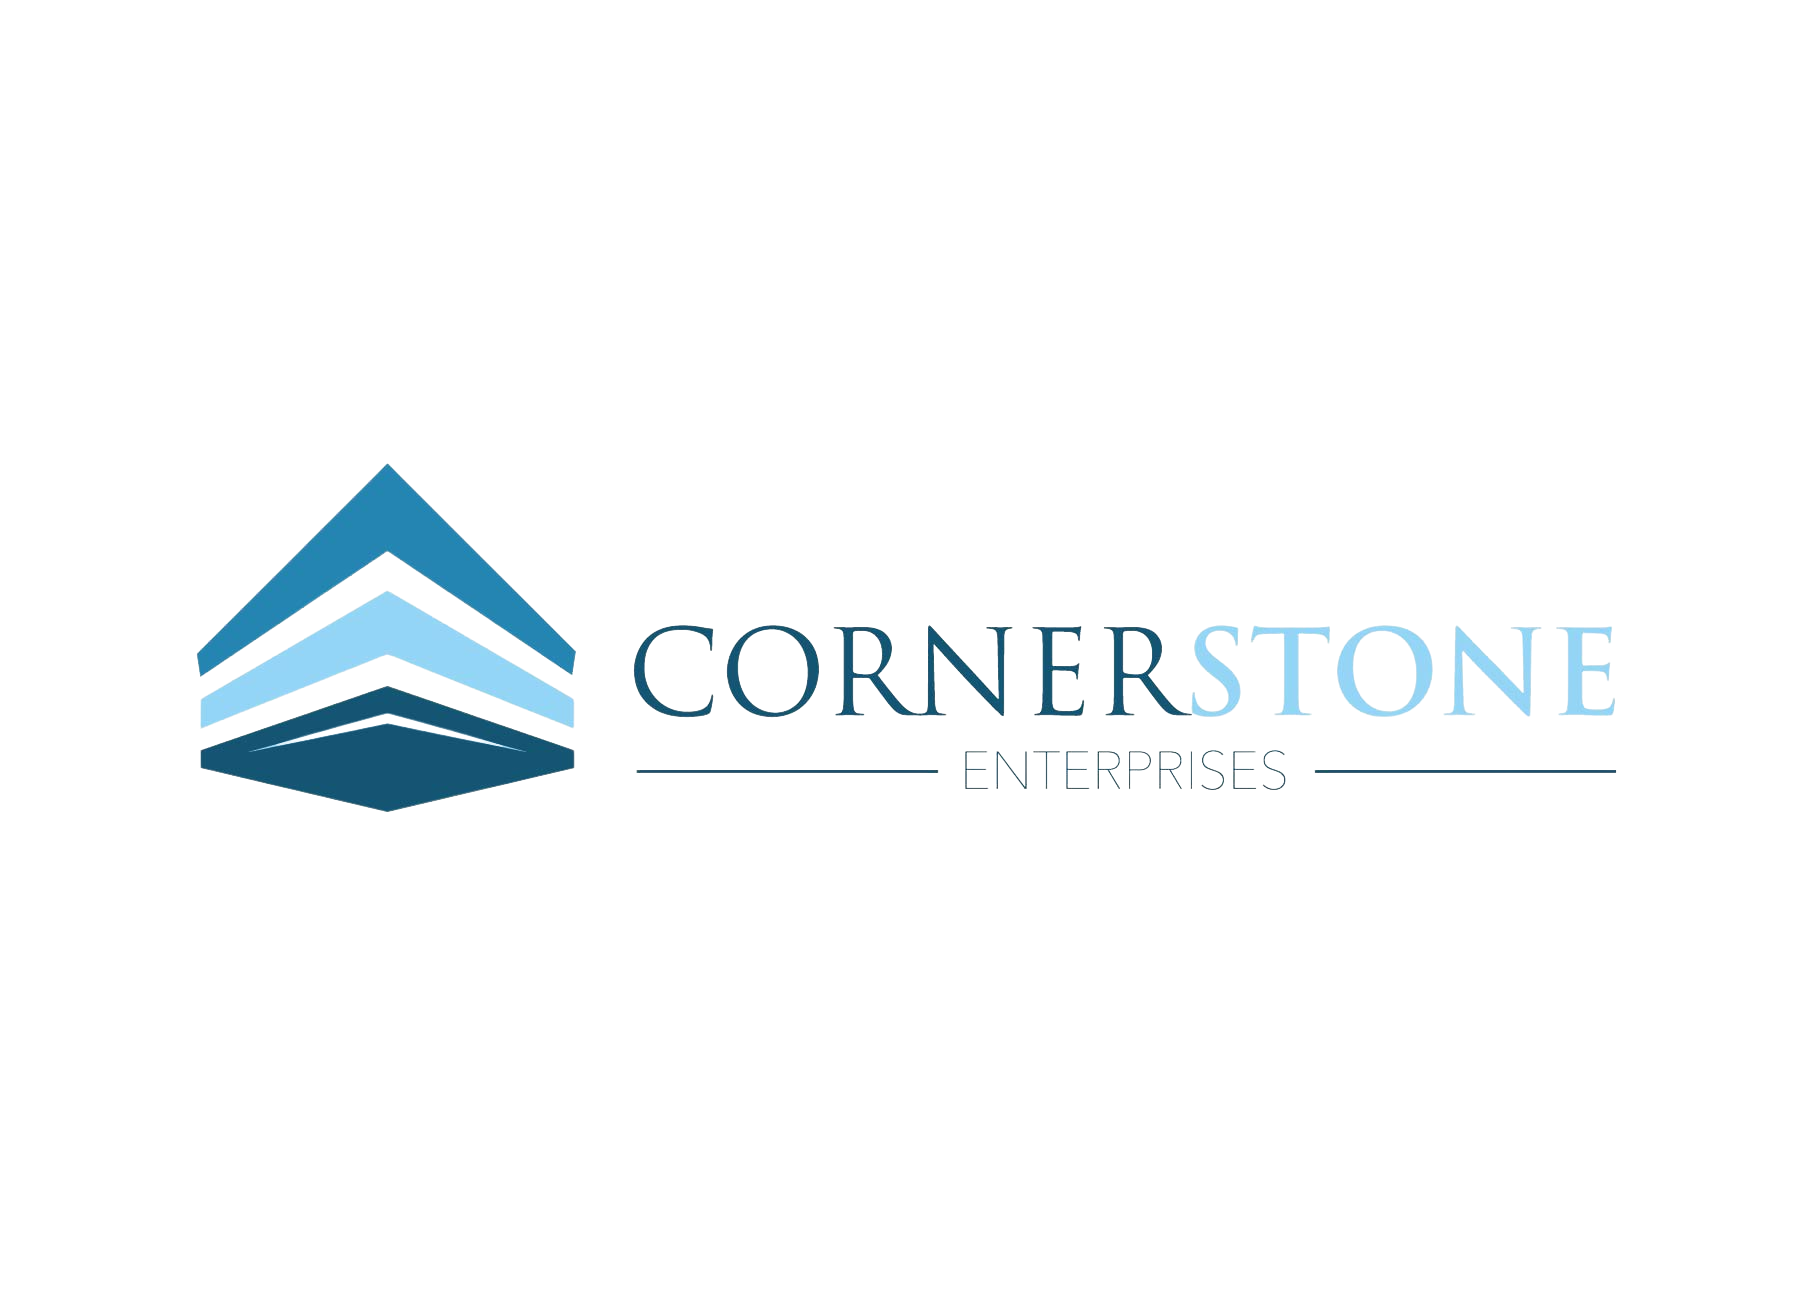 Corner stone logos